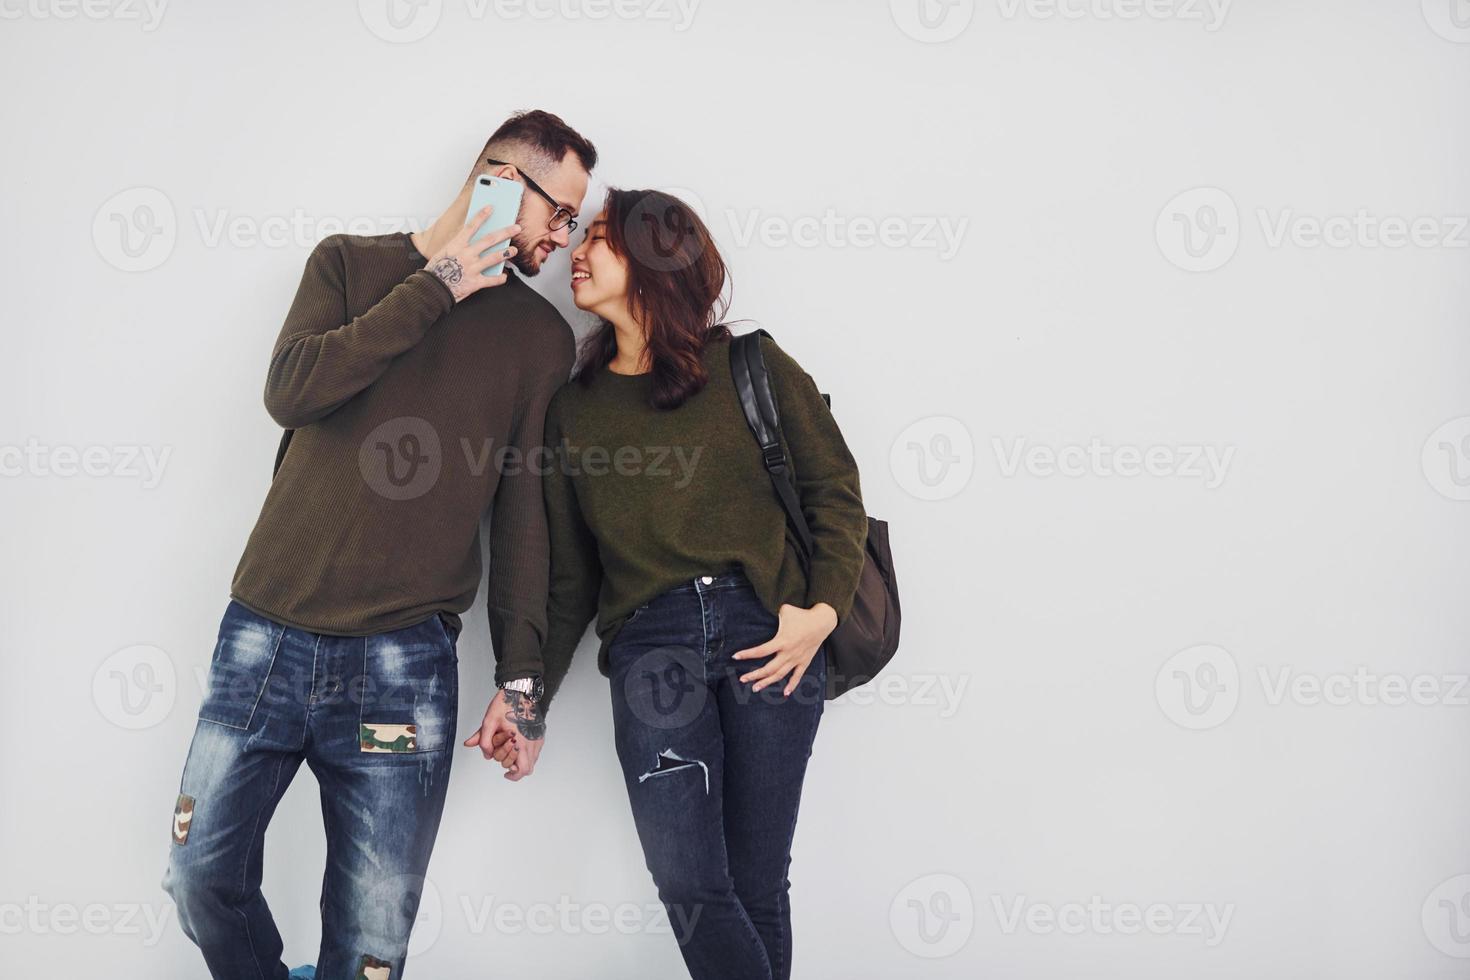 vrolijk multi etnisch paar met rugzak en telefoon staand samen binnenshuis in de studio tegen wit achtergrond foto